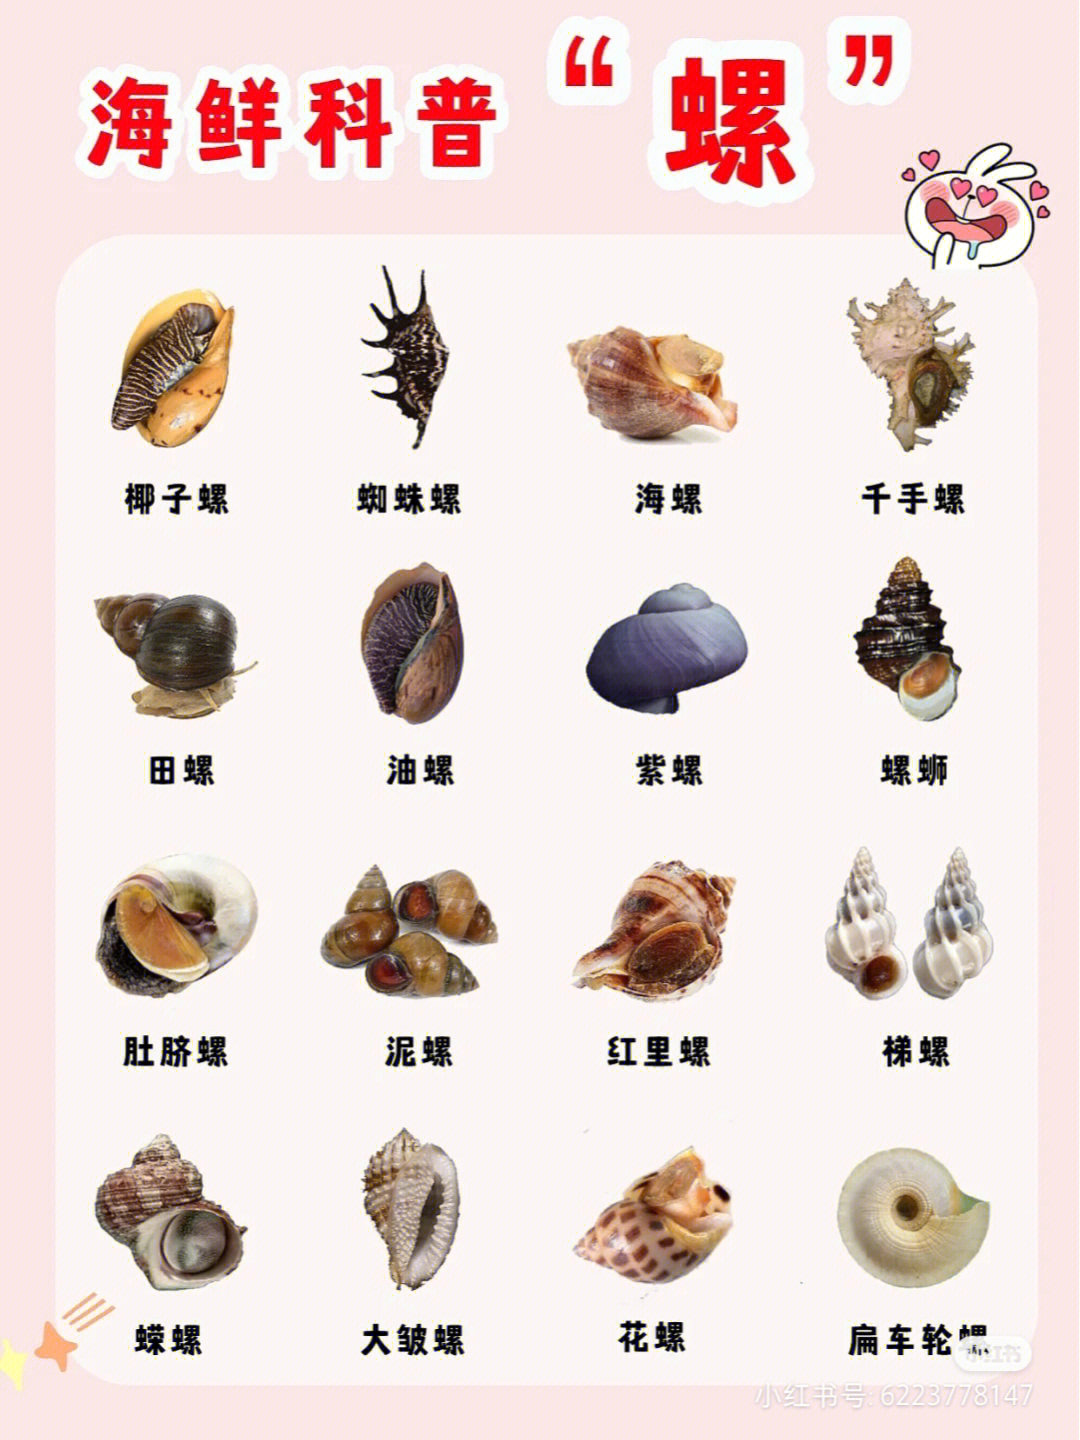 海螺类品种大全及介绍图片